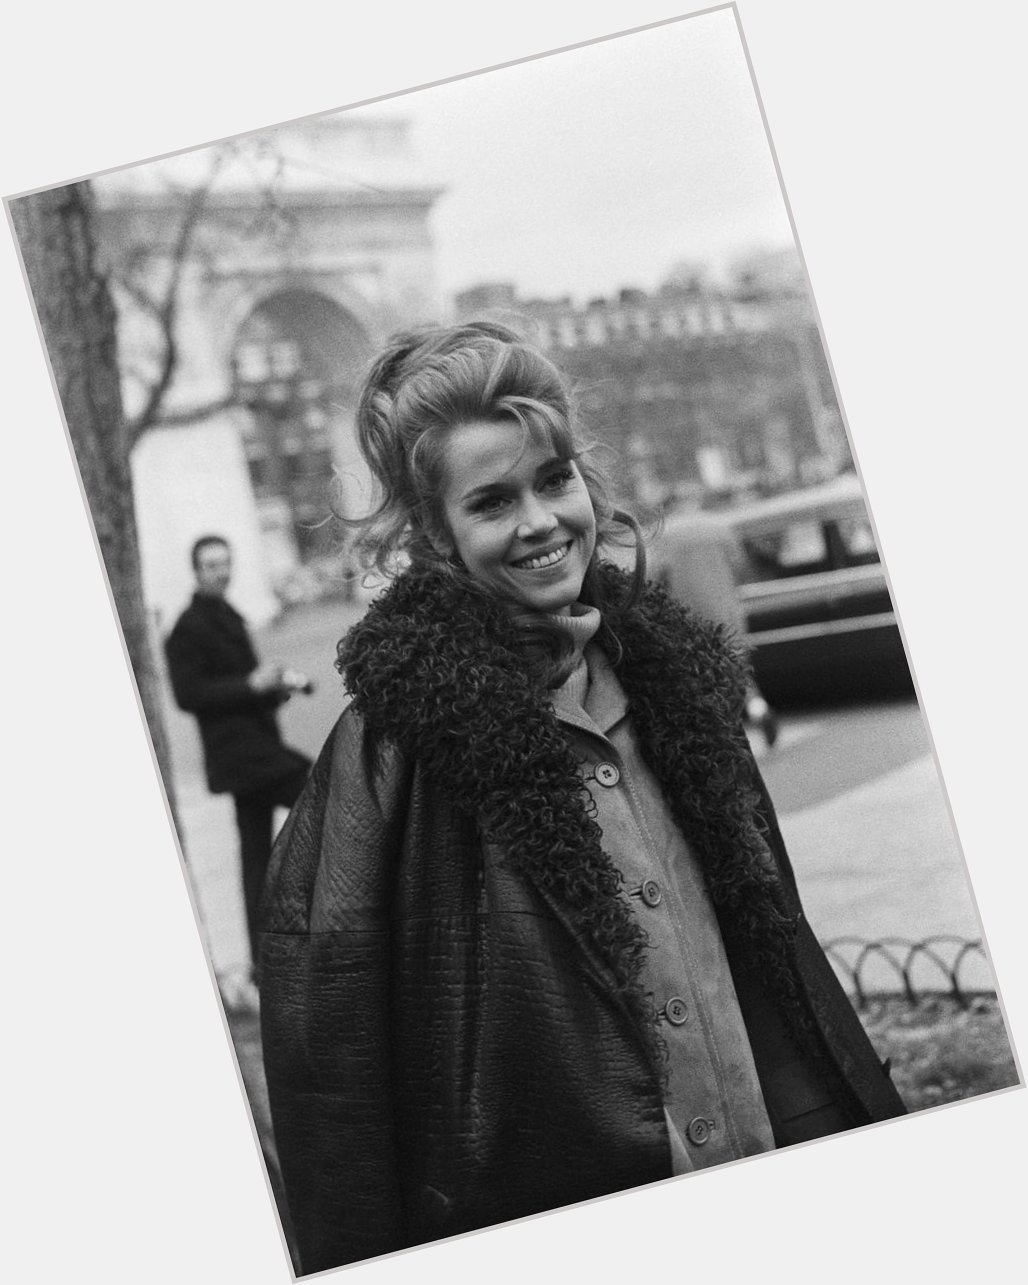 Happy birthday Jane Fonda! 